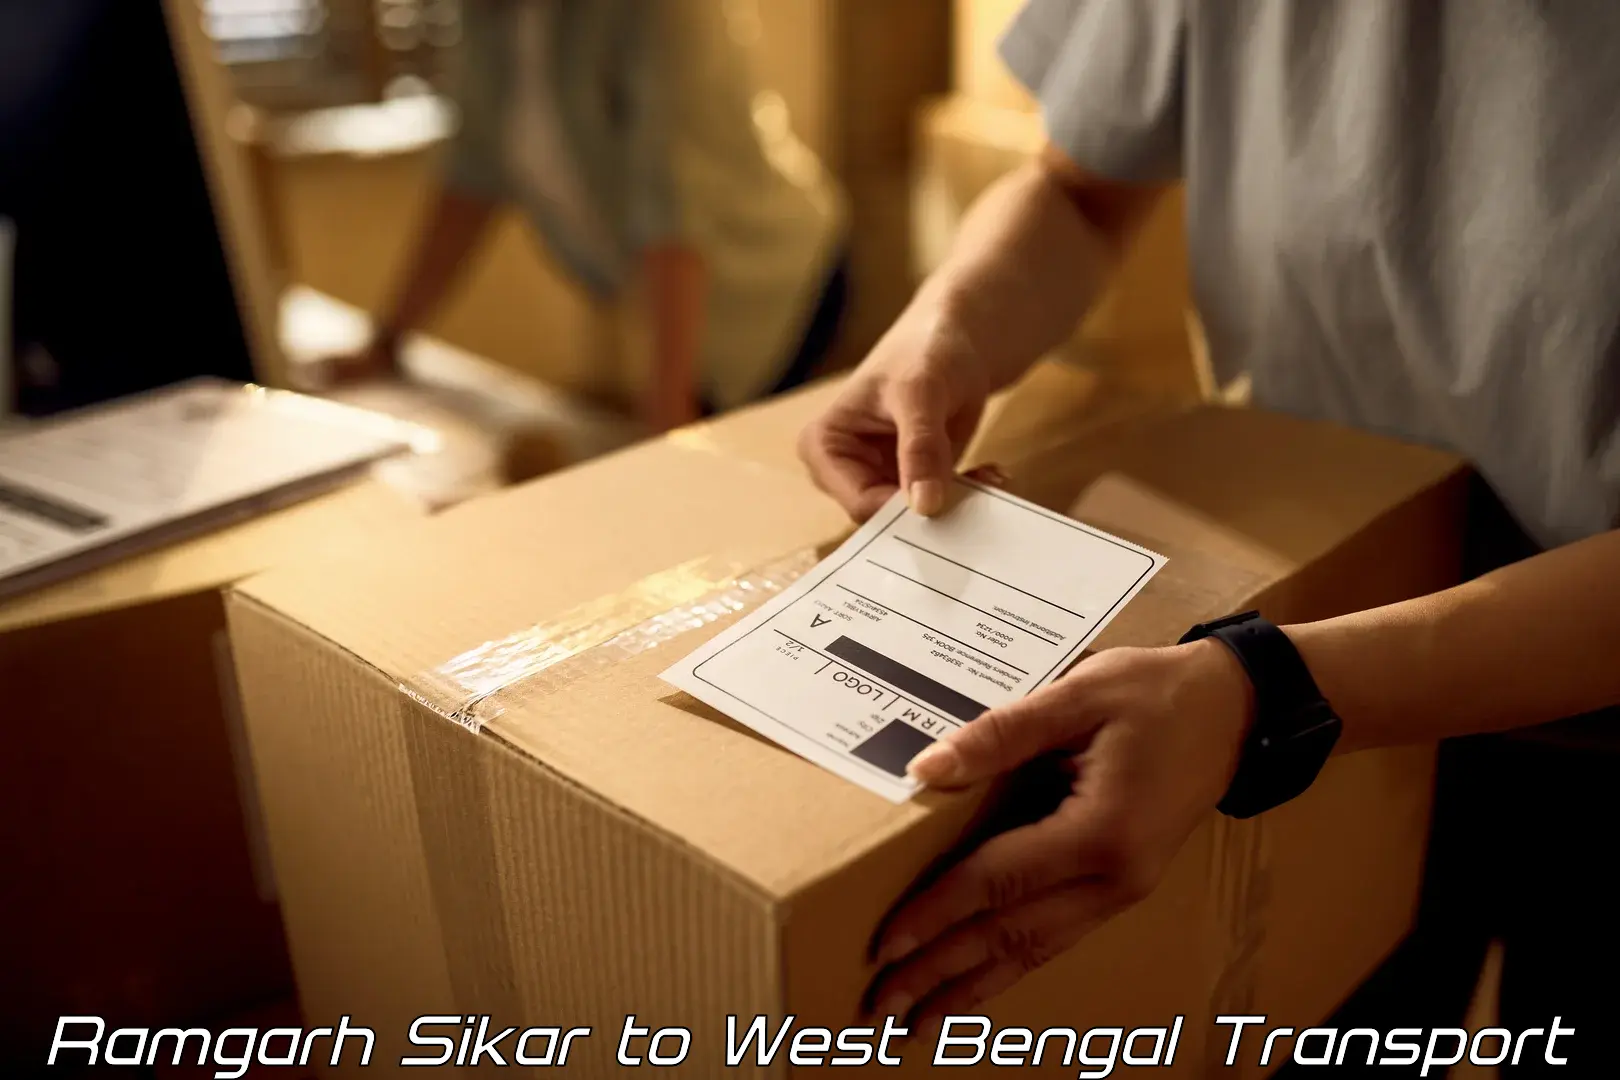 Vehicle parcel service Ramgarh Sikar to Guskhara